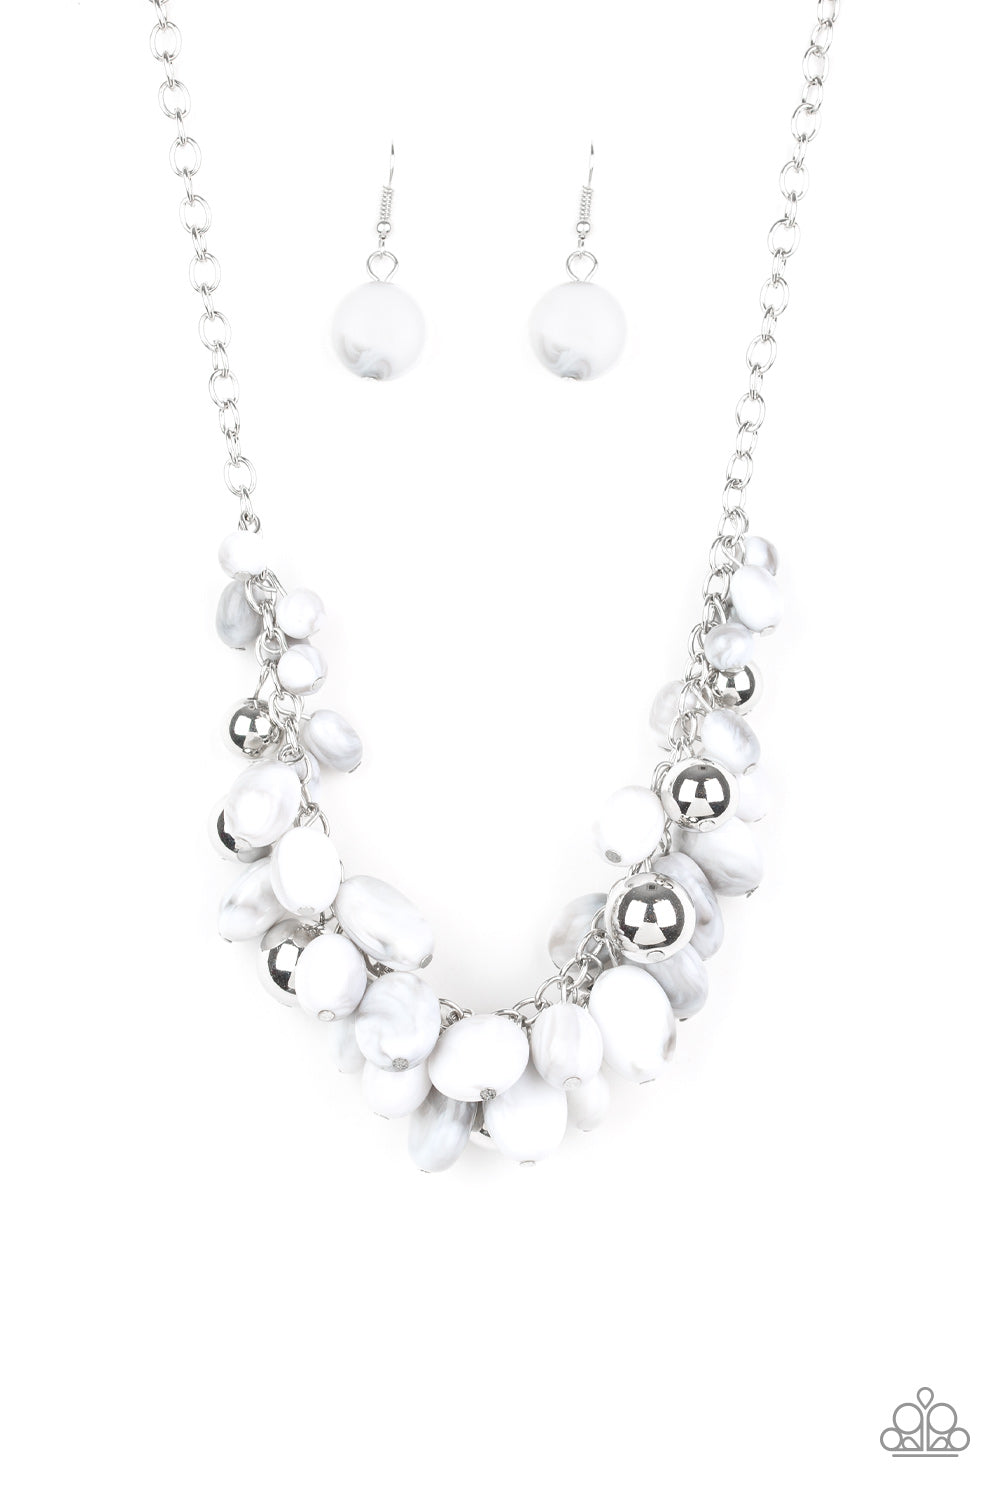 Full Out Fringe - white - Paparazzi necklace